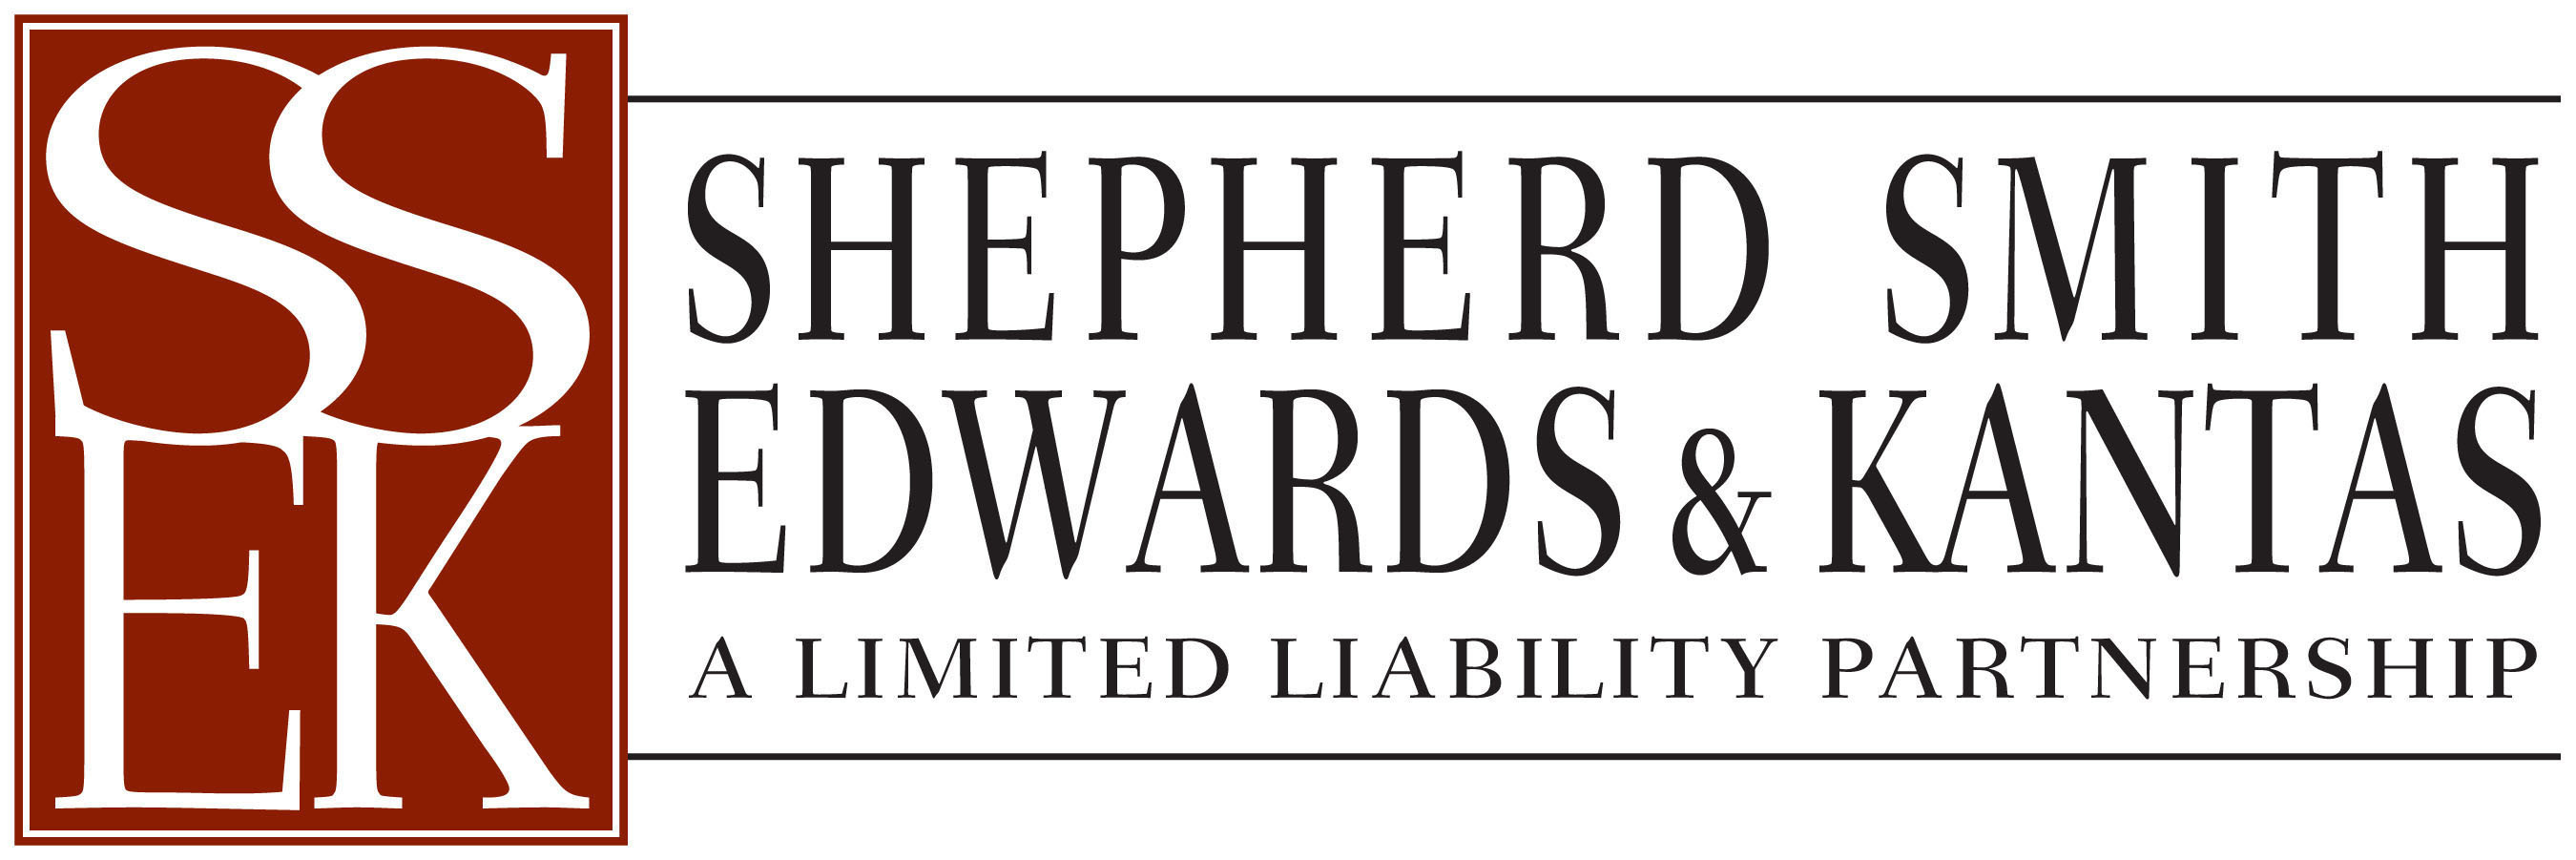 Shepherd Smith Edwards & Kantas LLP. (PRNewsFoto/Shepherd Smith Edwards & Kantas LLP) (PRNewsFoto/SHEPHERD SMITH EDWARDS...)